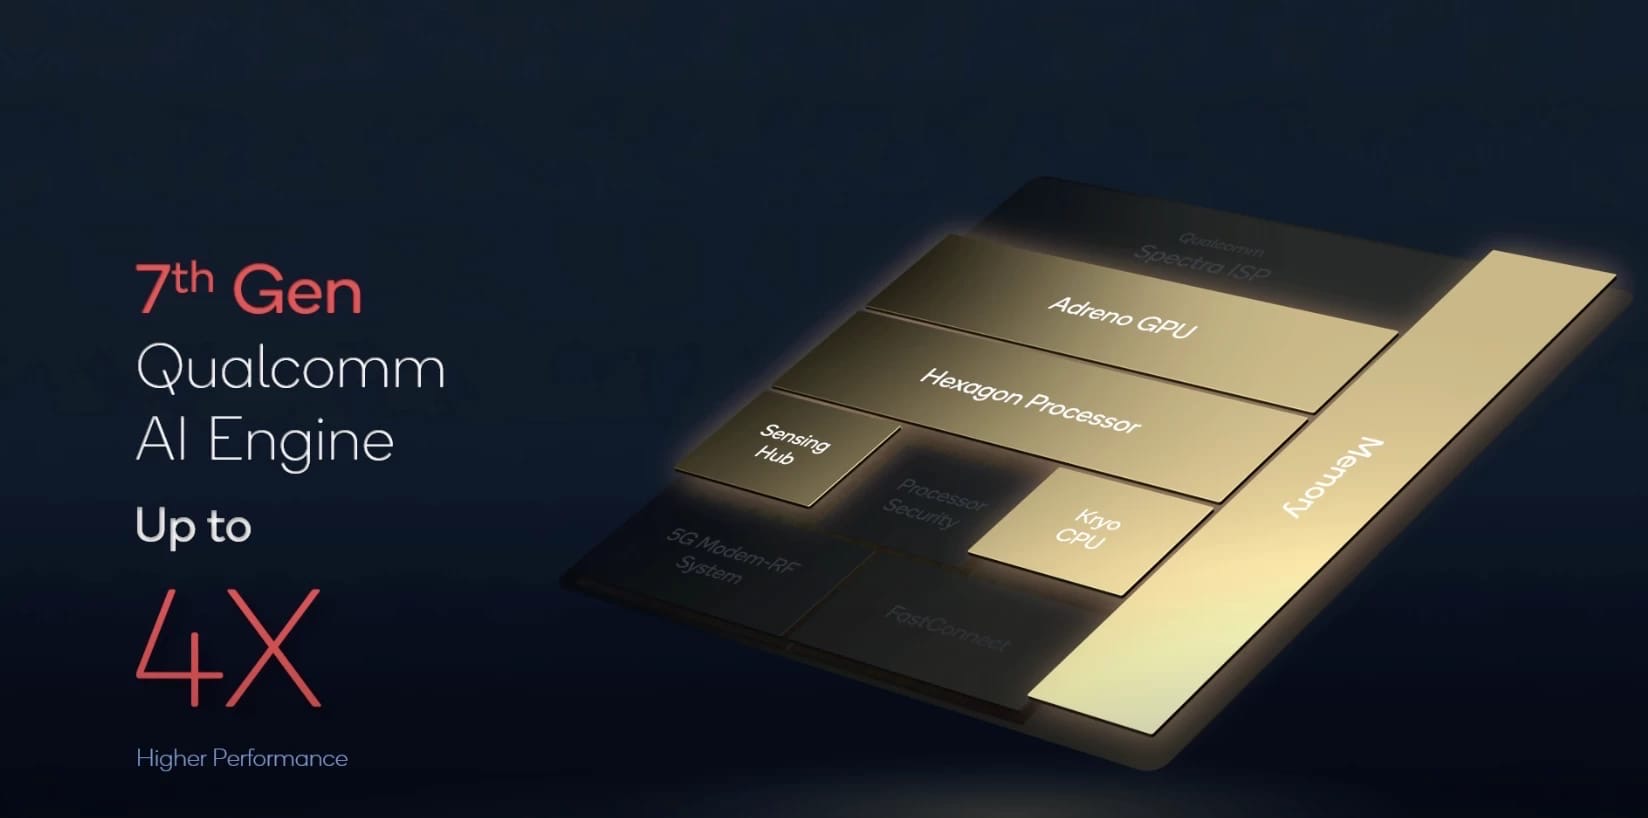 Представлен новый мобильный процессор от Qualcomm - Snapdragon 8 Gen 1. 